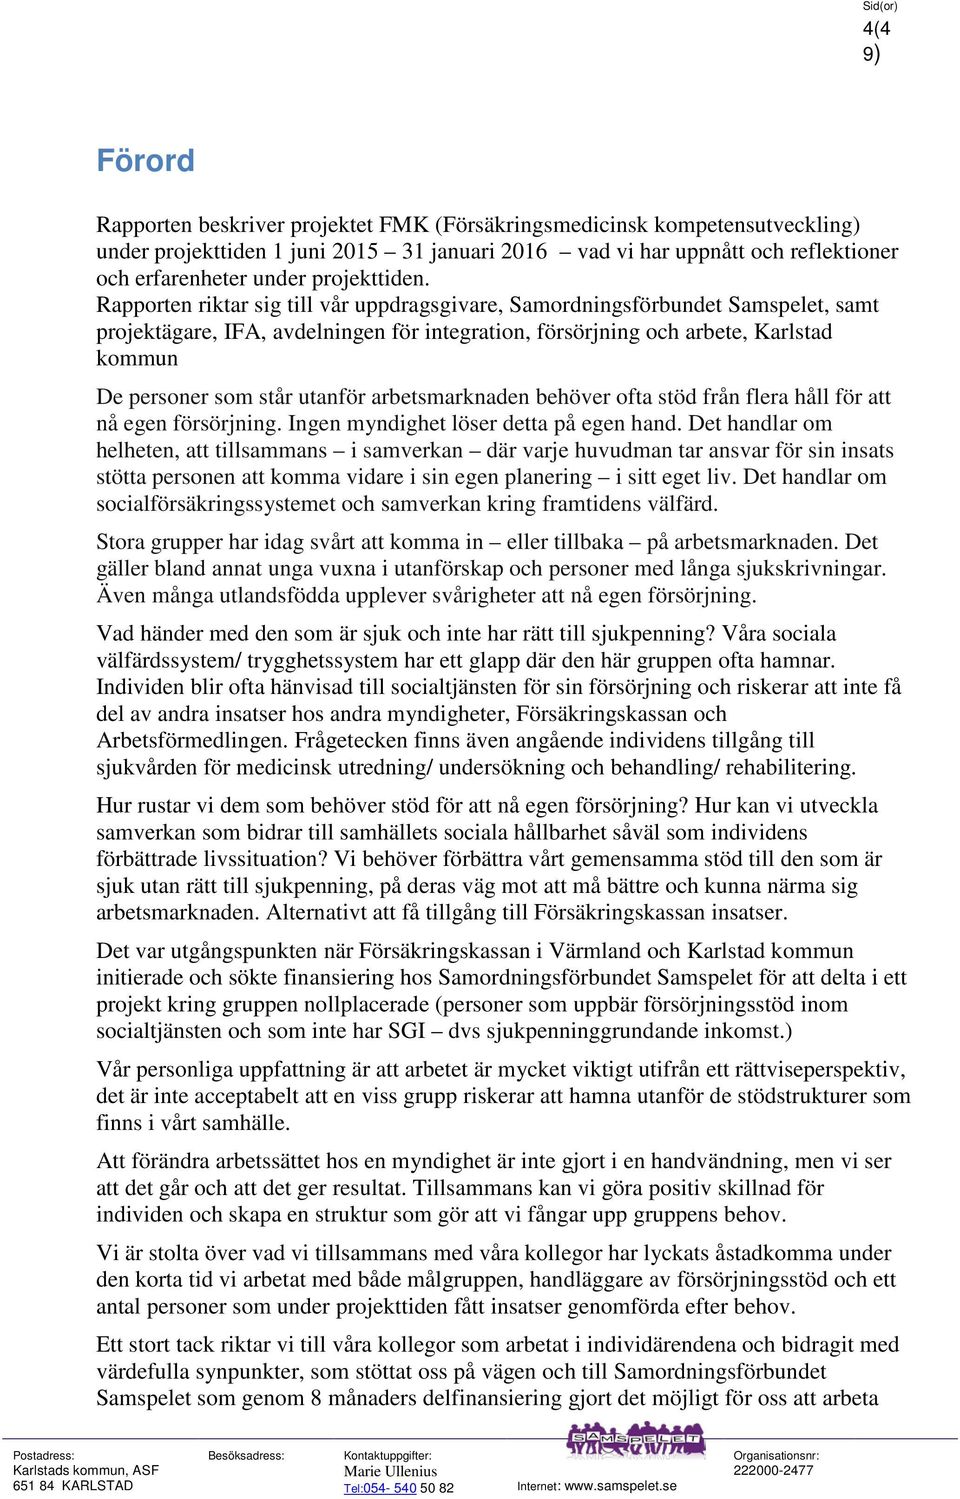 Rapporten riktar sig till vår uppdragsgivare, Samordningsförbundet Samspelet, samt projektägare, IFA, avdelningen för integration, försörjning och arbete, Karlstad kommun De personer som står utanför